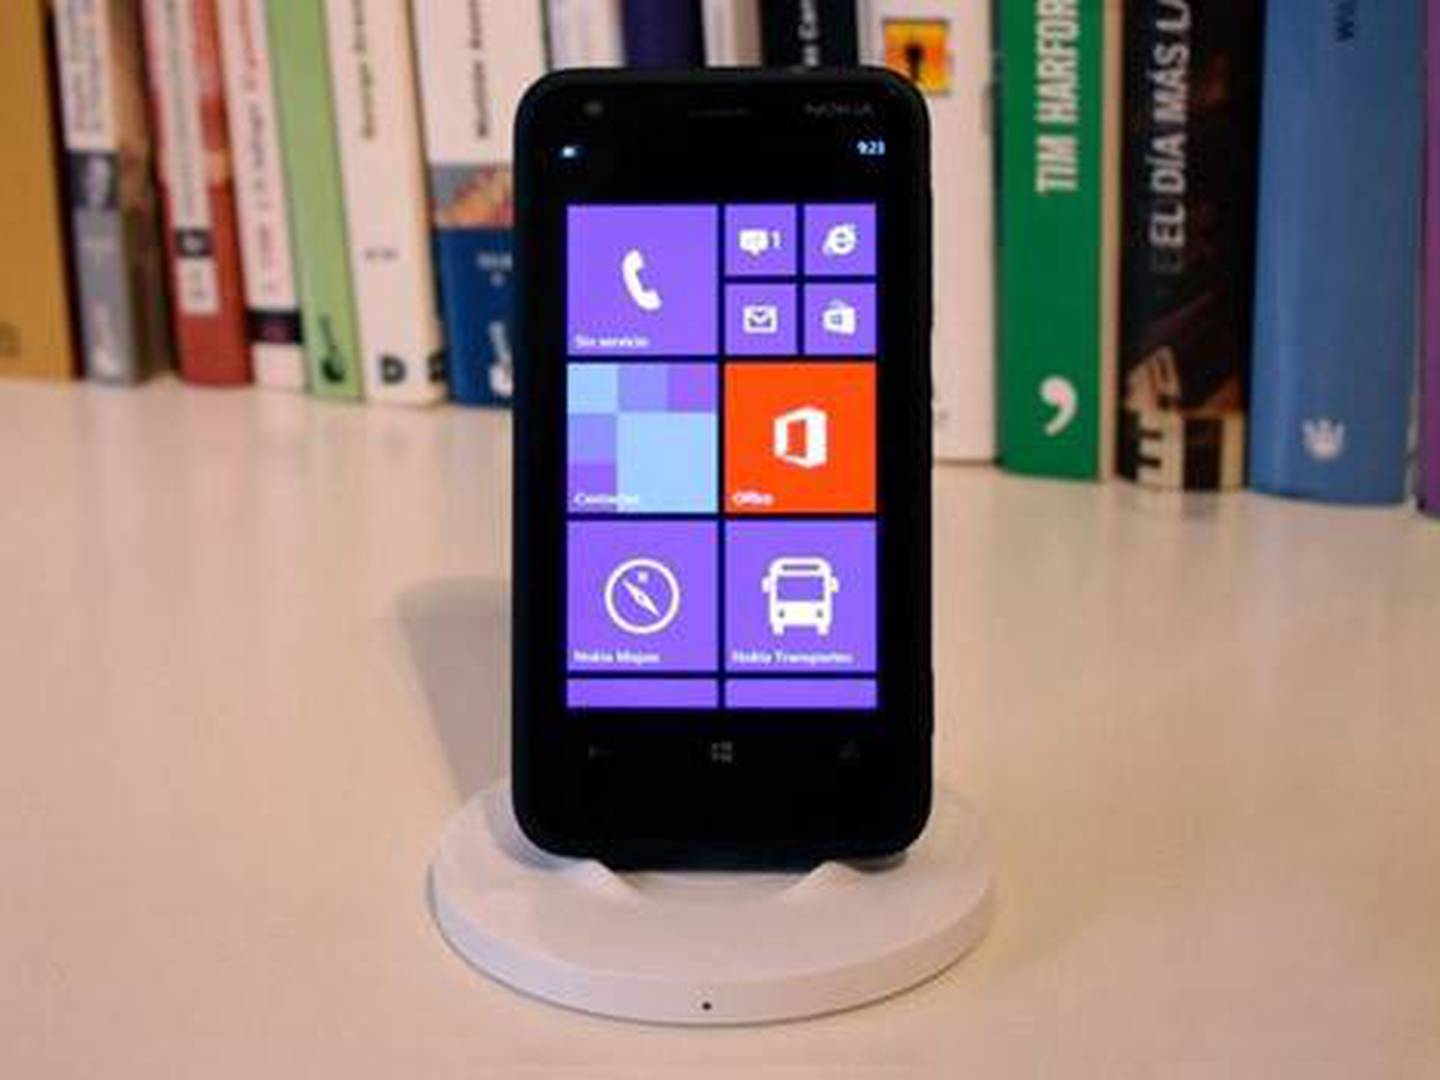 Nokia lanza dos móviles básicos cuya principal función es ser un